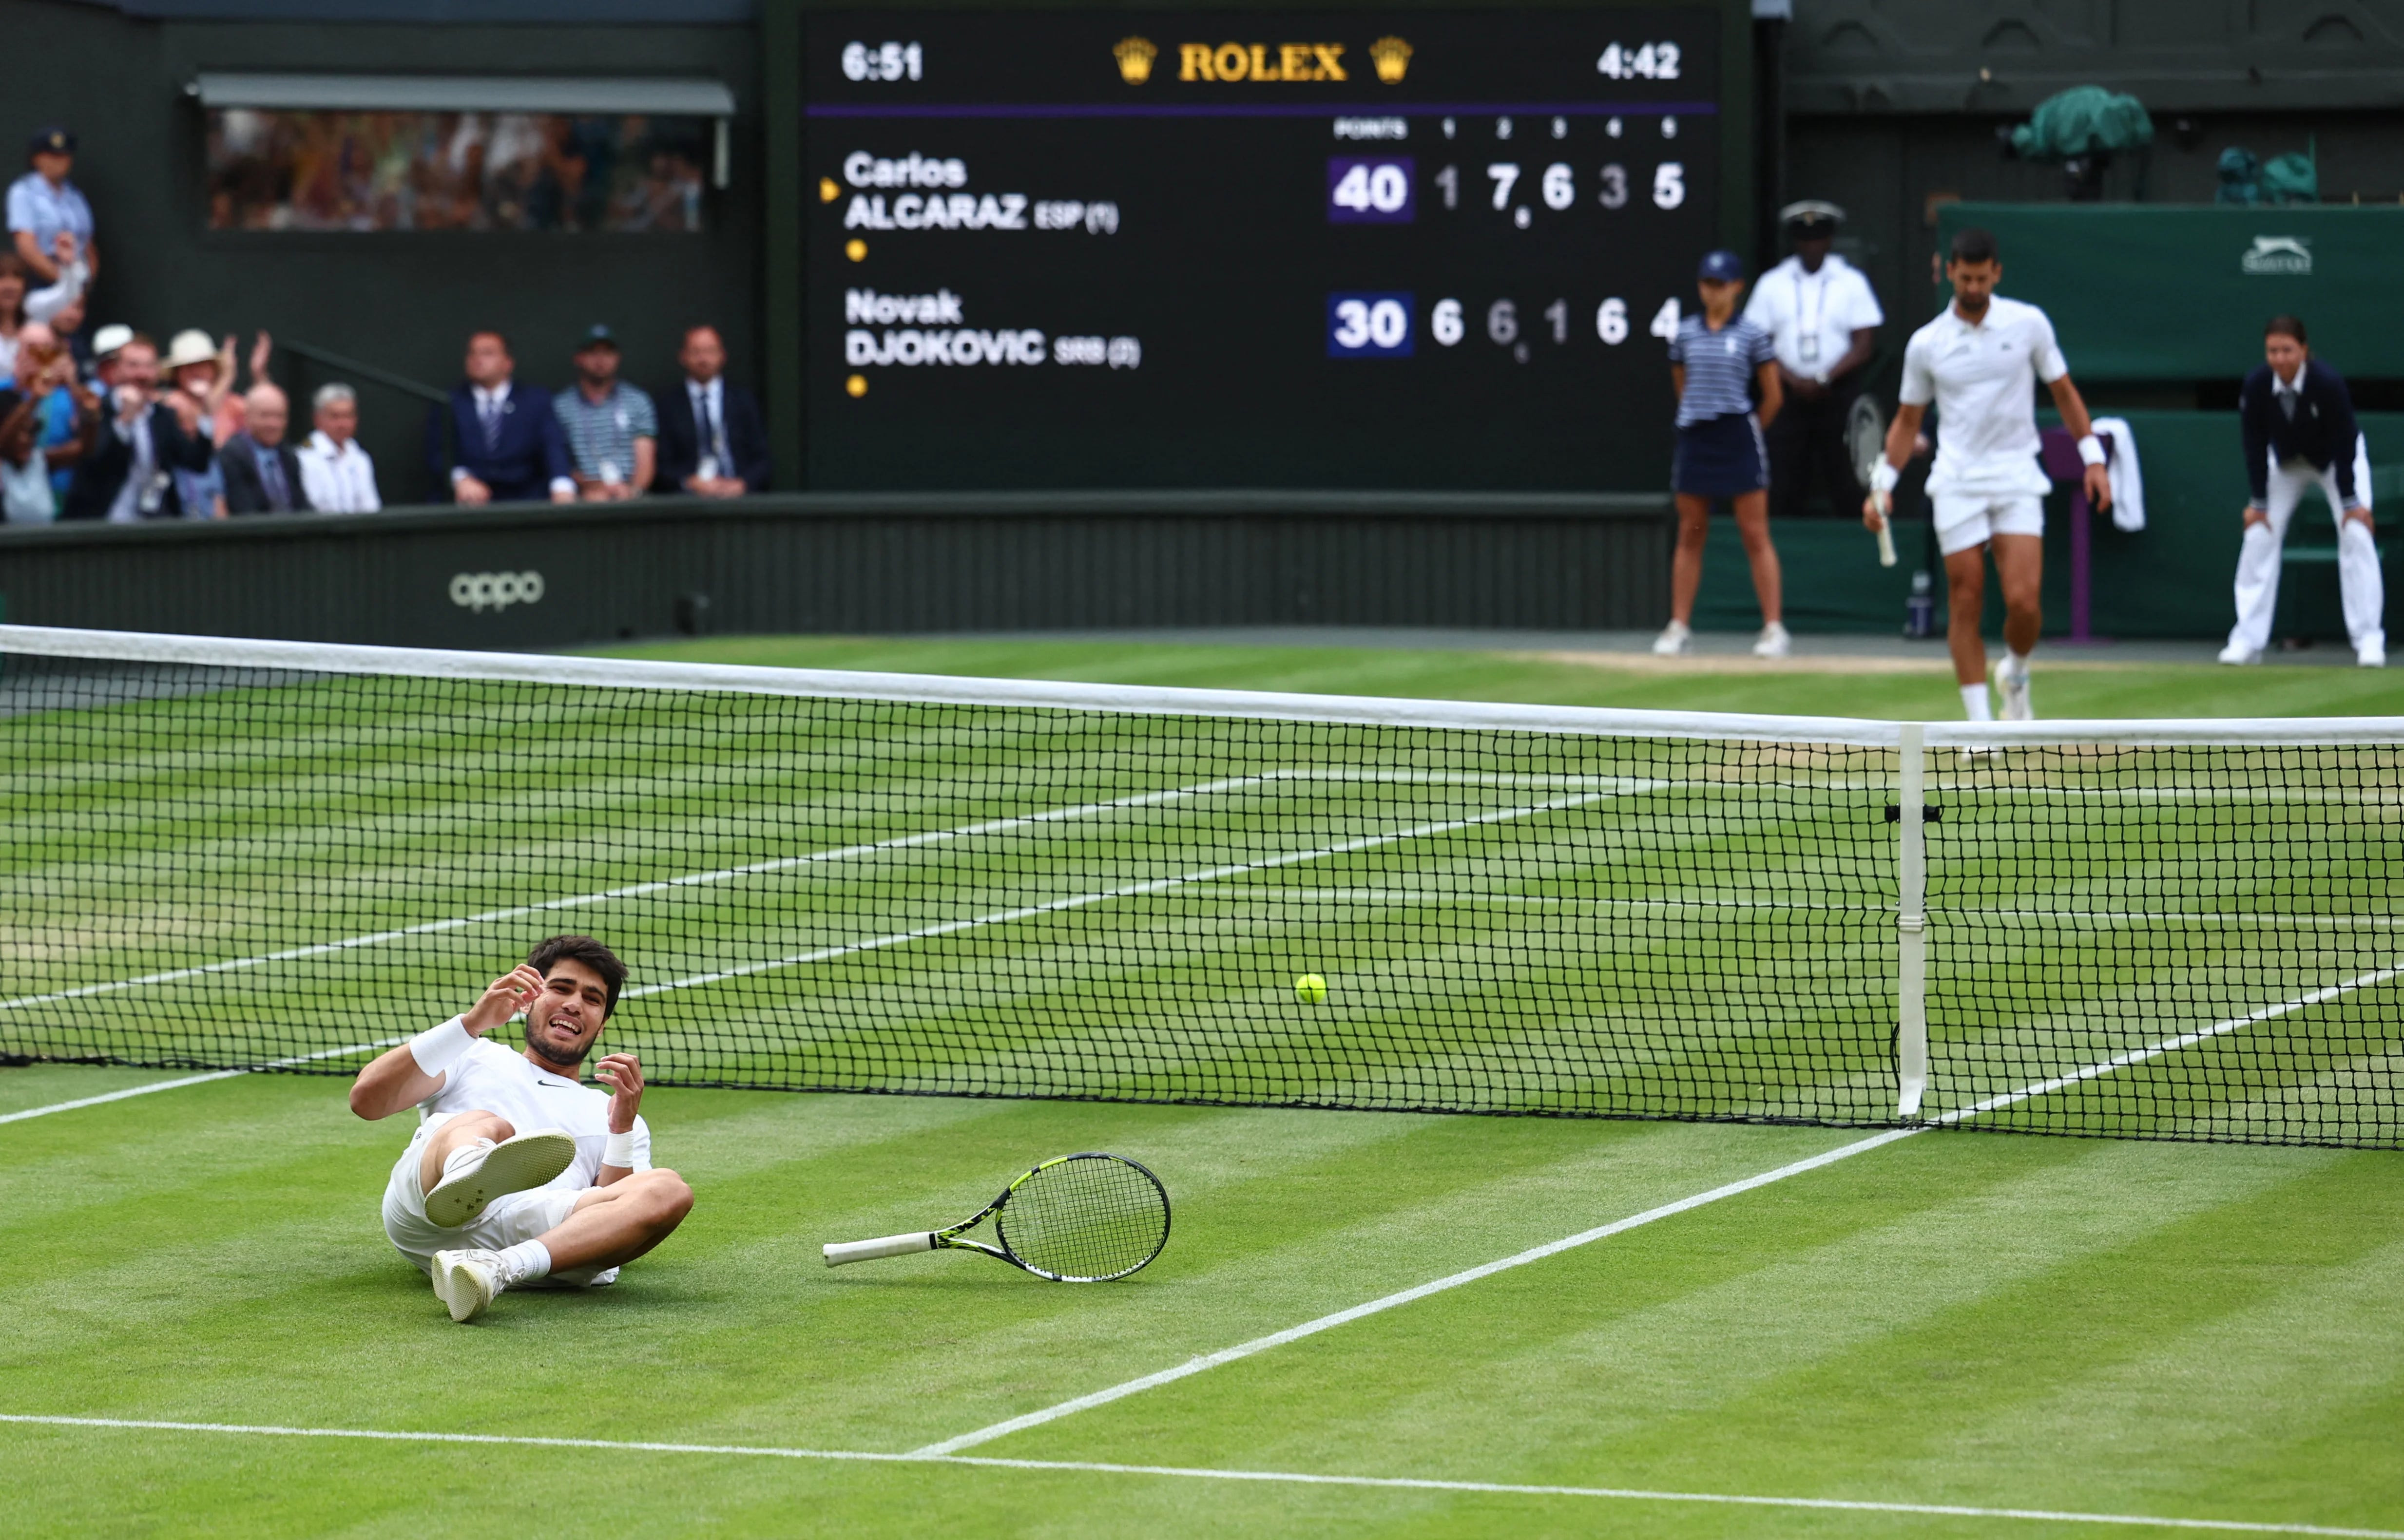 El momento en el que Carlos Alcaraz derrot a Novak Djokovic en la final de Wimbledon (REUTERS/Toby Melville)